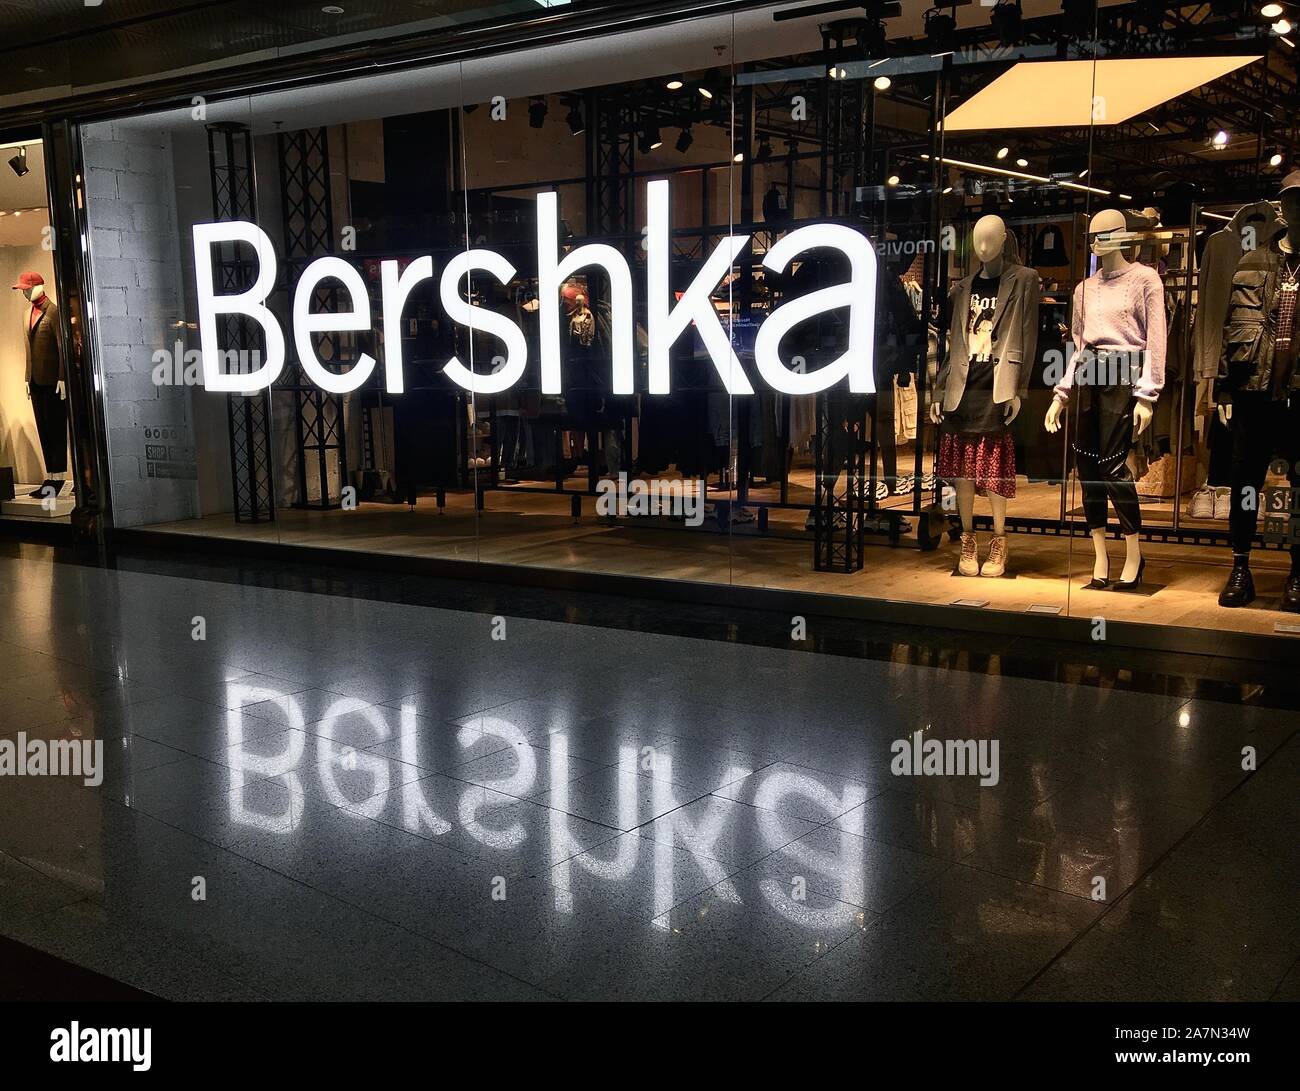 Bershka retailer hi-res stock photography and images - Alamy